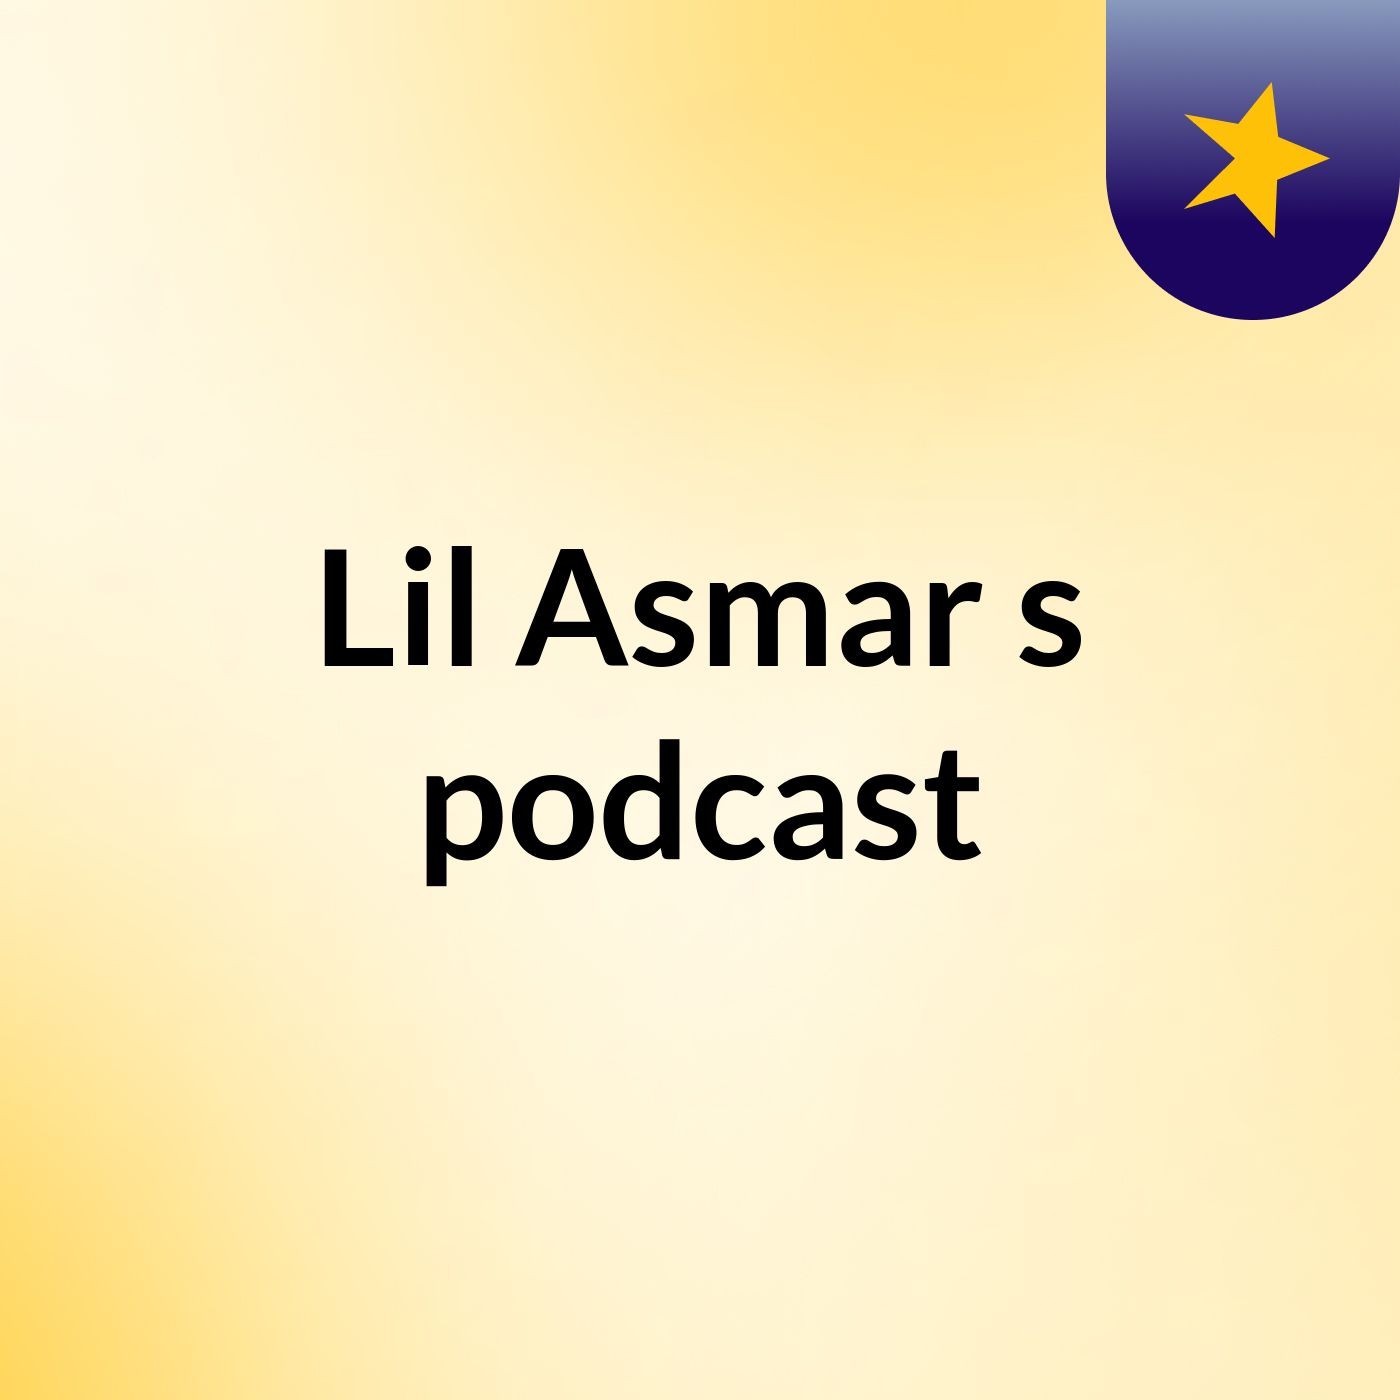 Episode 25 - Lil Asmar's podcast